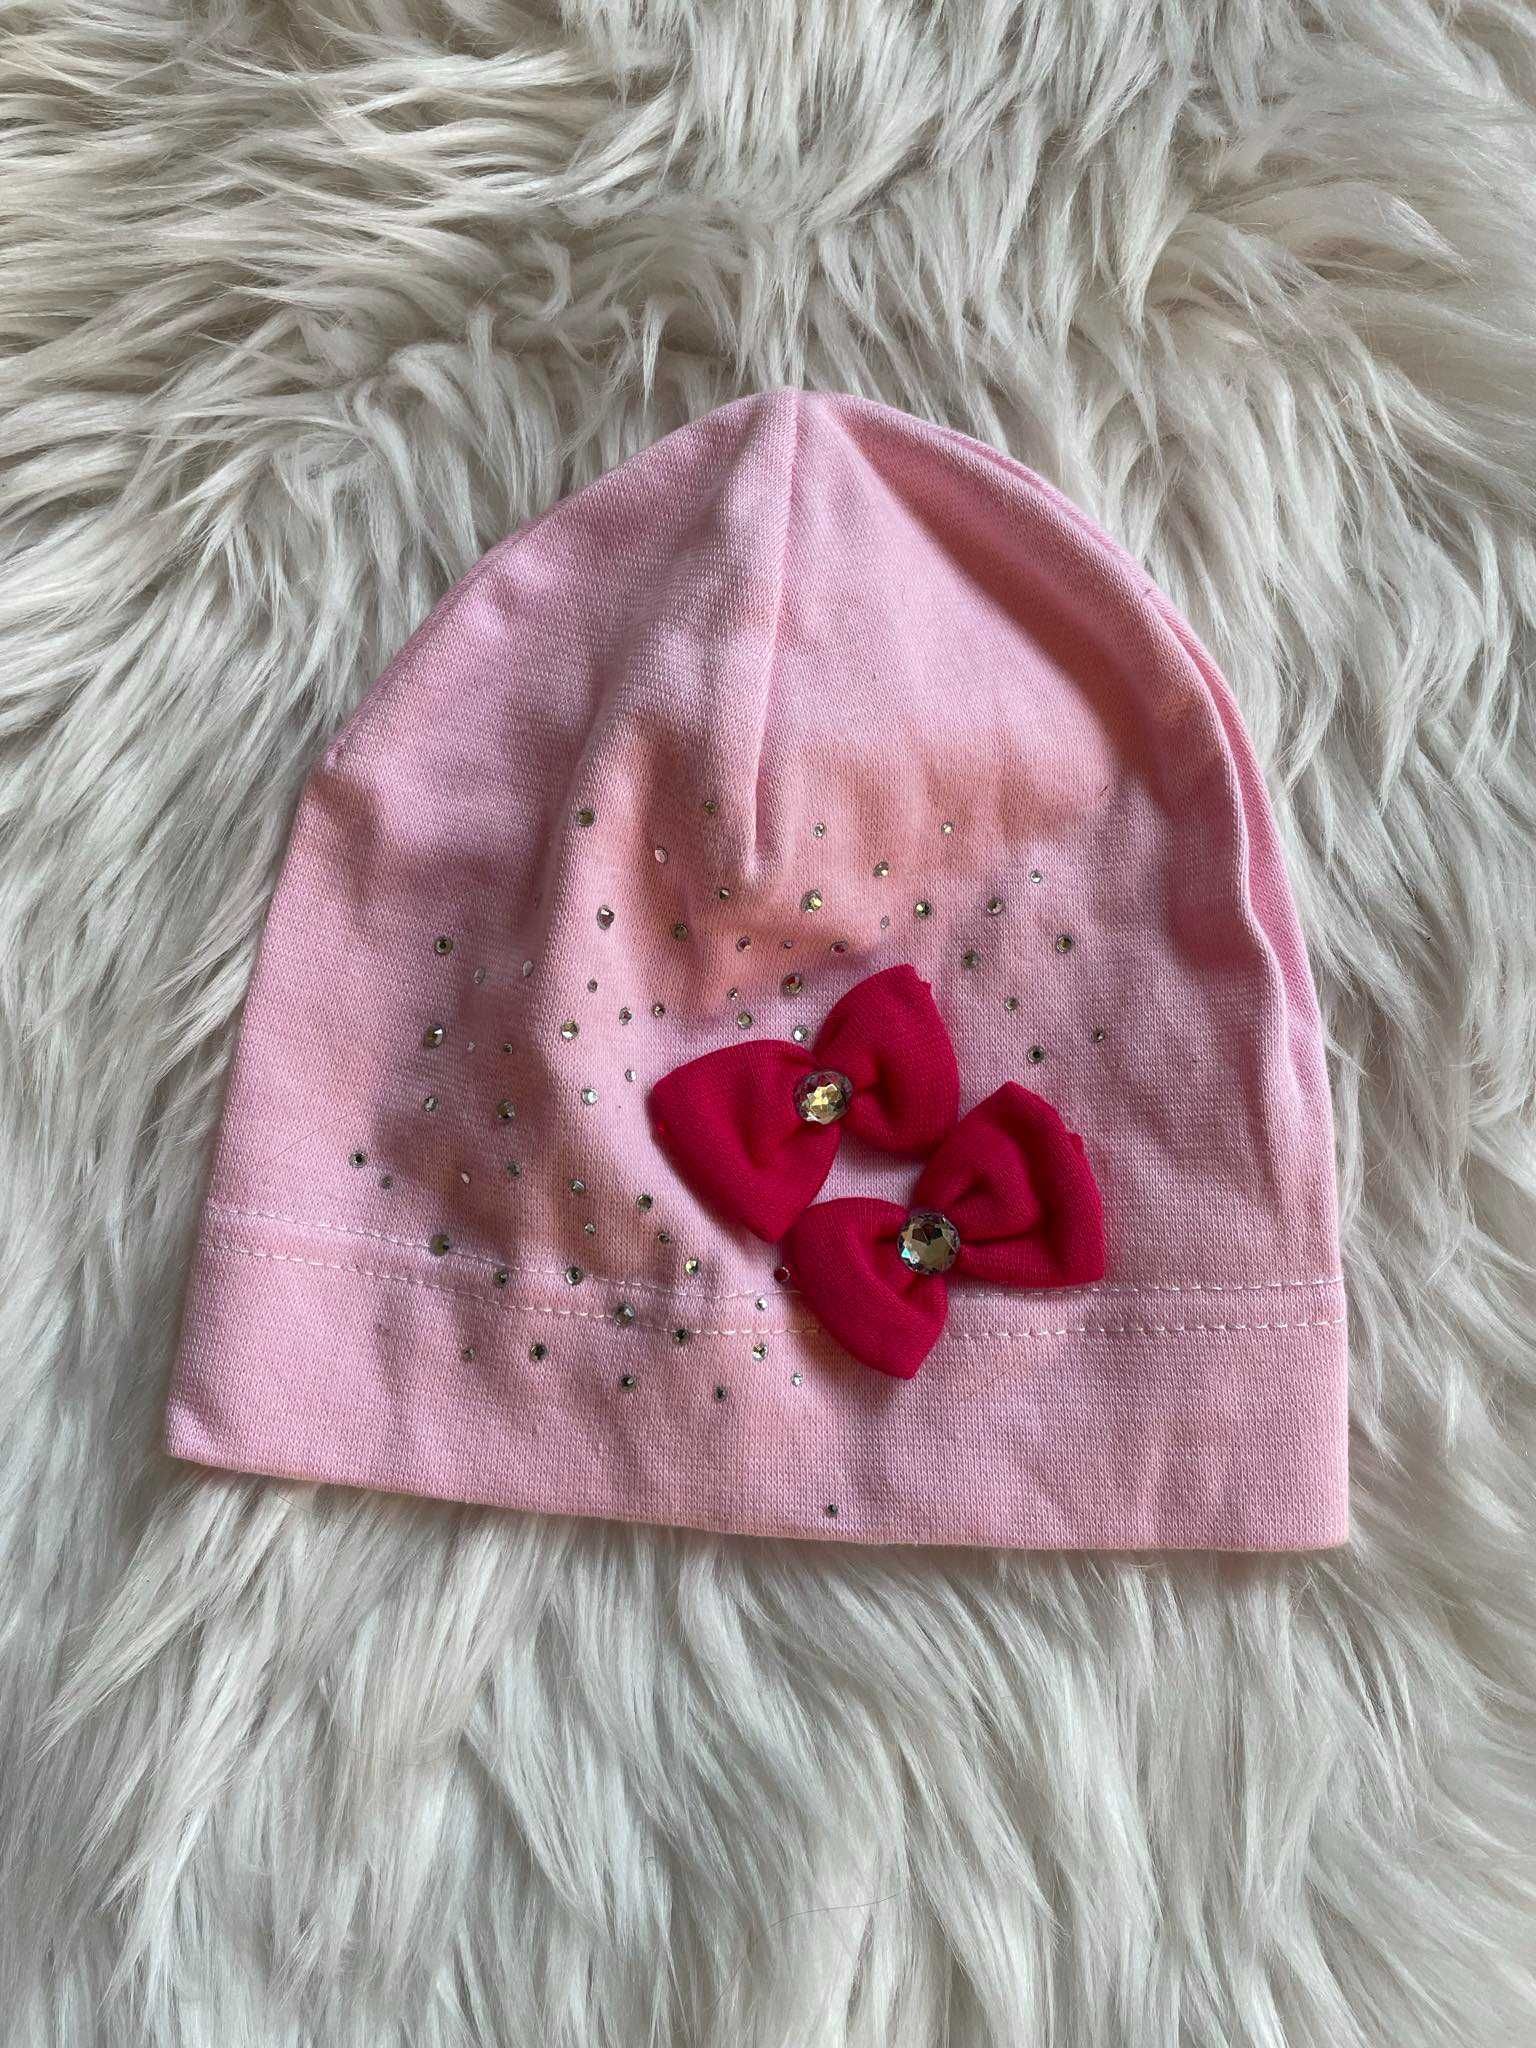 NOWA  wiosenno letnia czapka różowa 1-4 lata